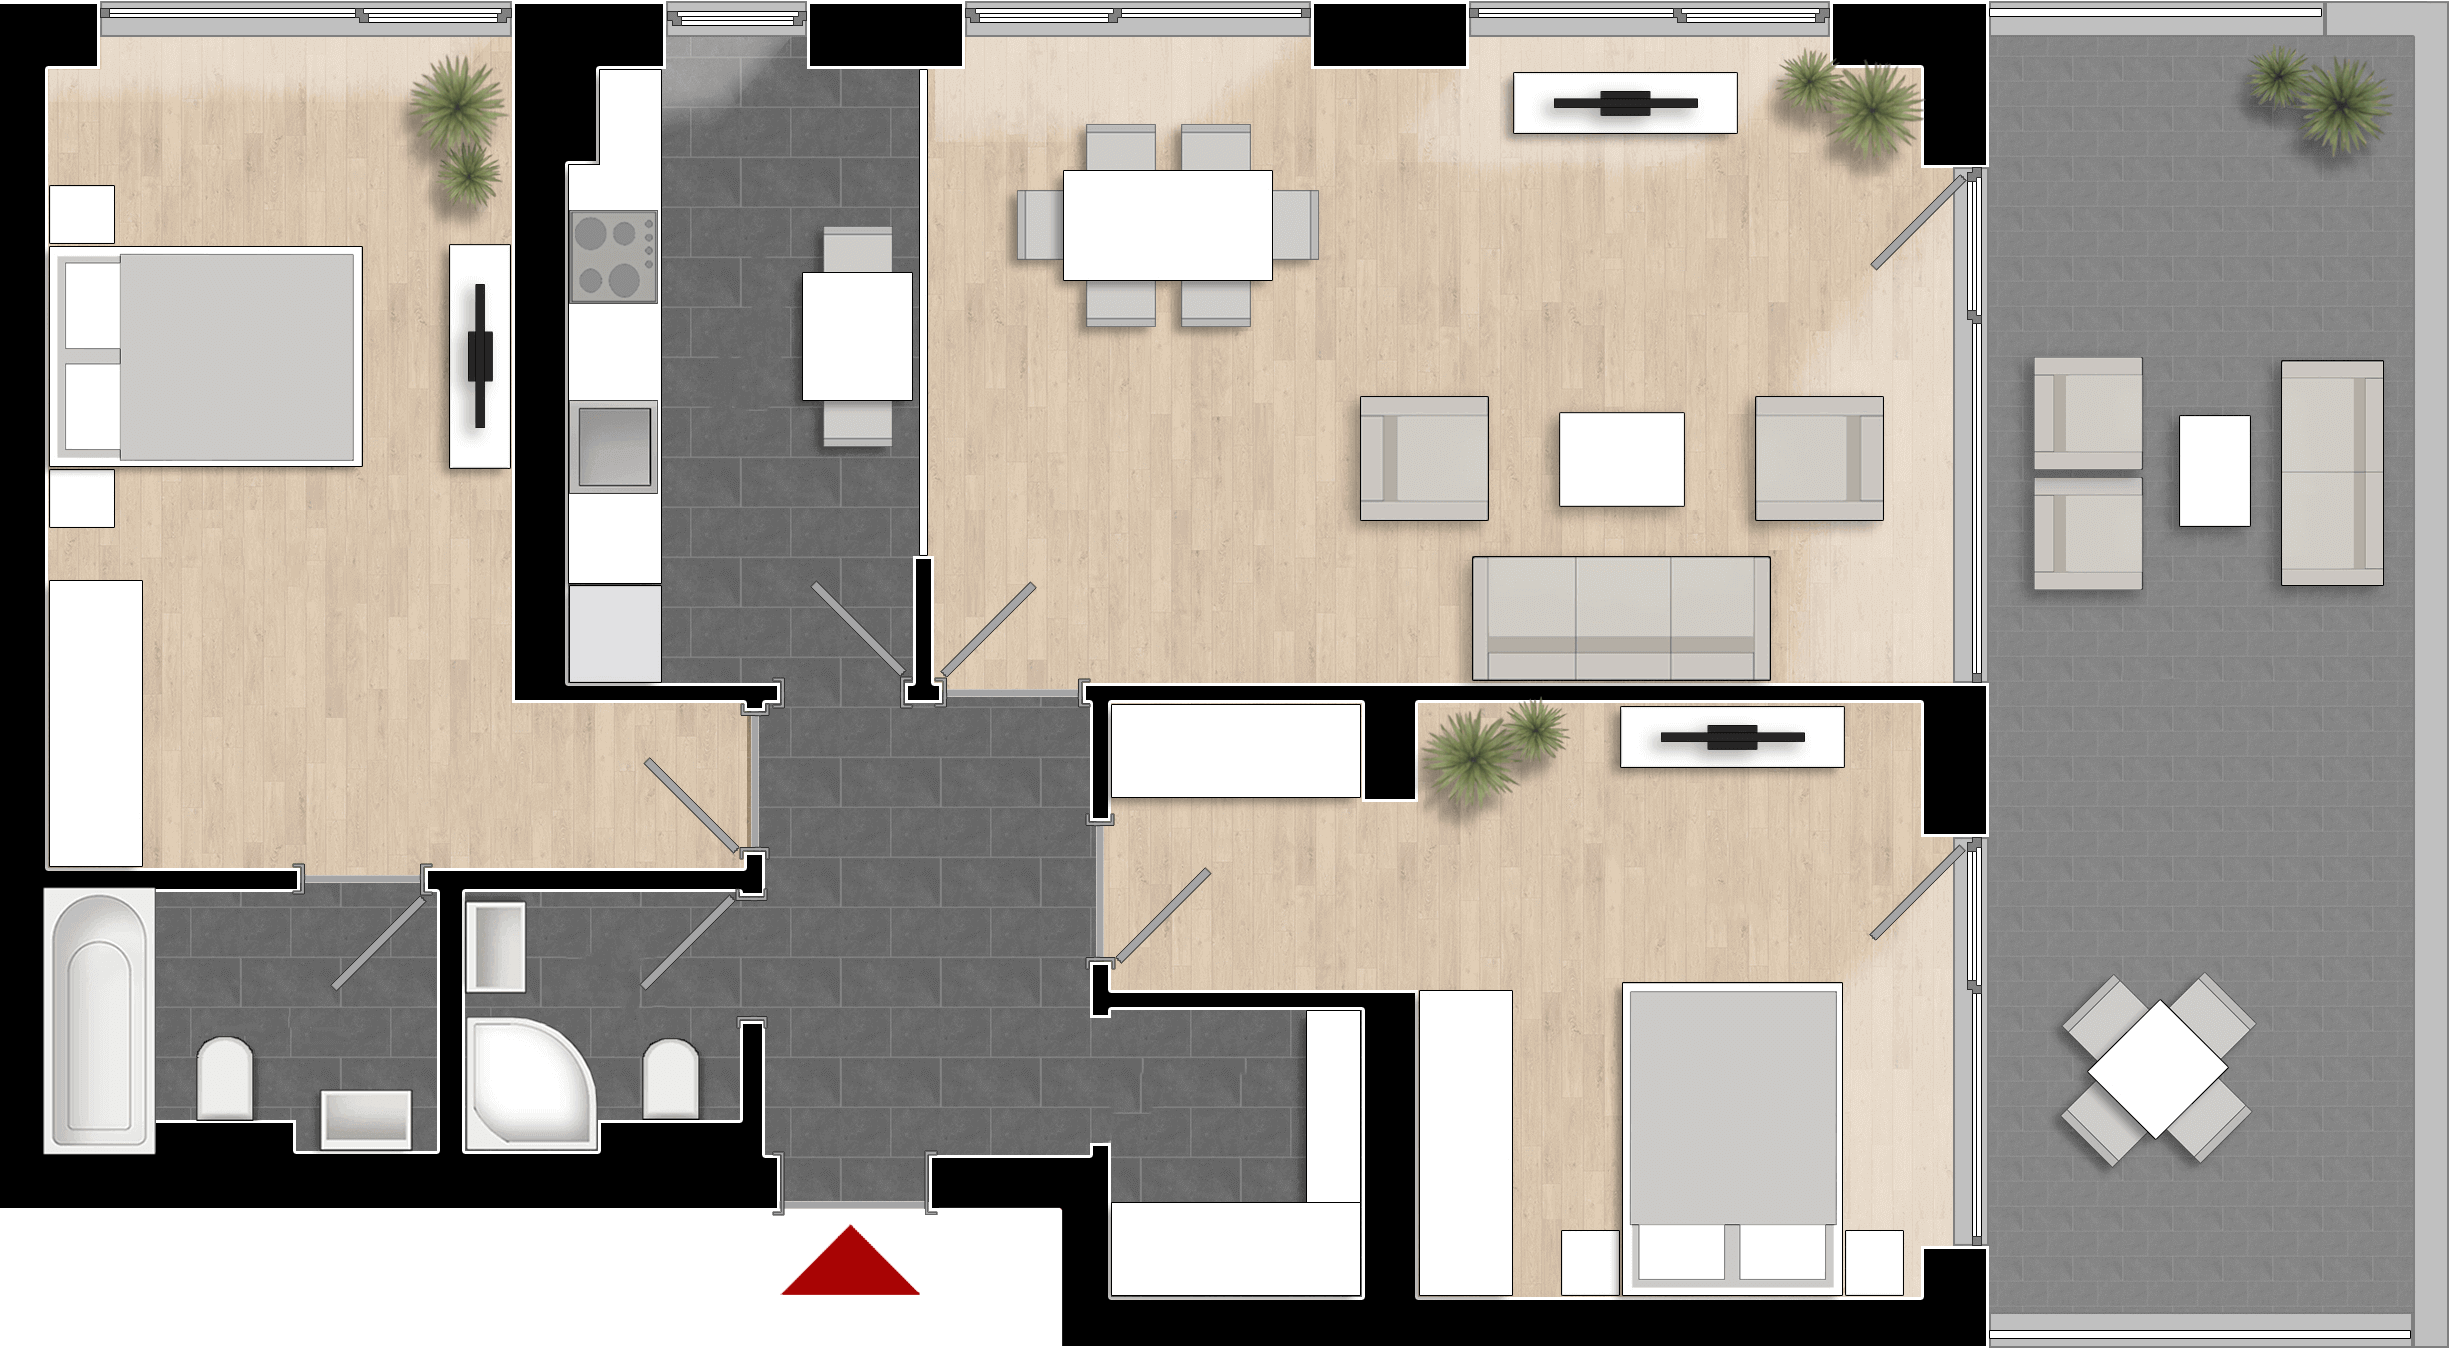  Apartament 906, Tip de apartament 3B cu 3 camere 